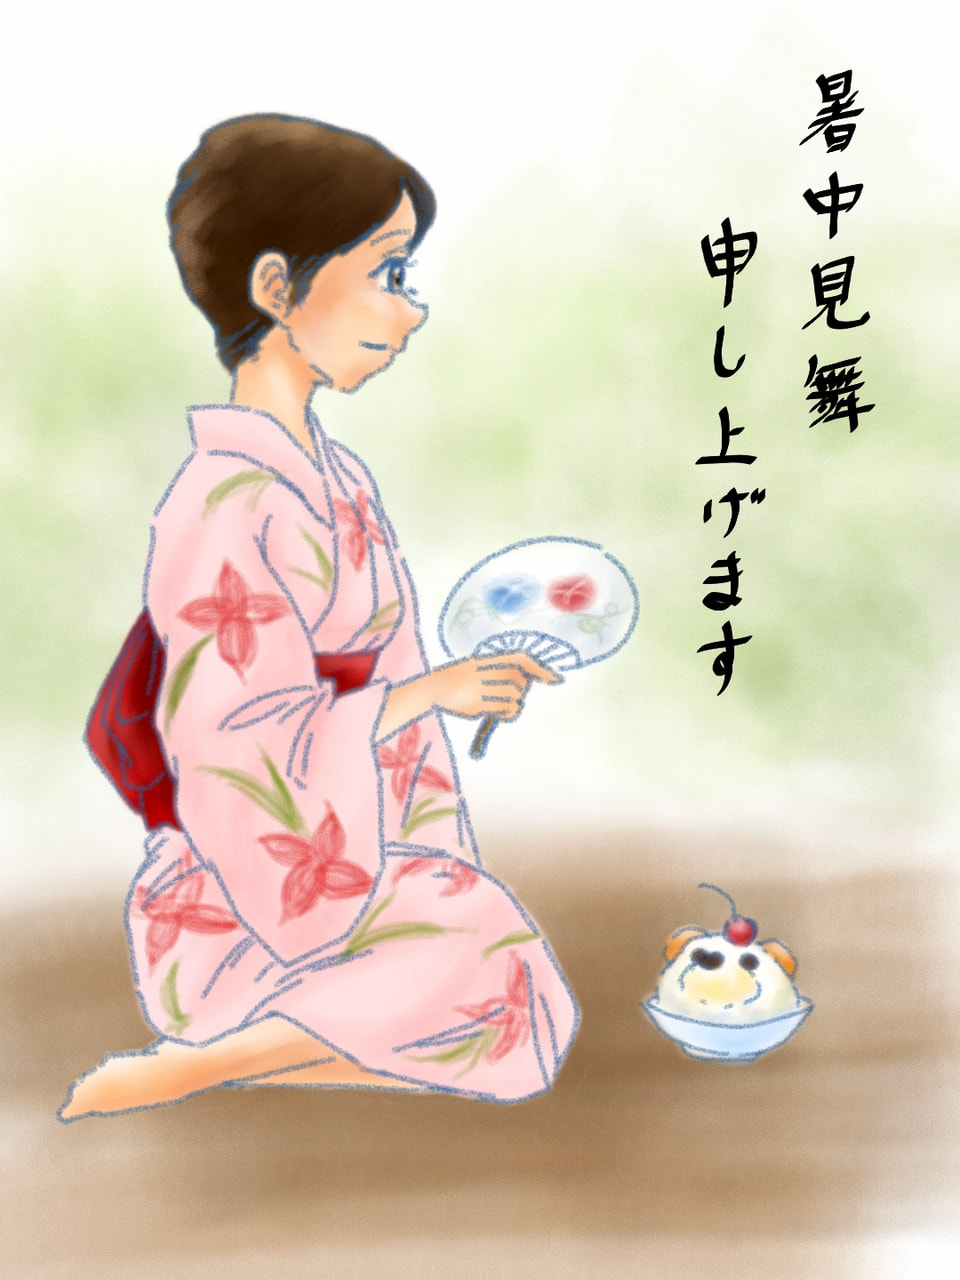 私はバテ気味ですが熱中症にはくれぐれも気を付けましょう😅 ‪@hono‬ さんかわいいかき氷はシロクマくらいしか思い付かなかったです(笑)😂 #暑中見舞 #fridayswithsketch #mycountry #japan